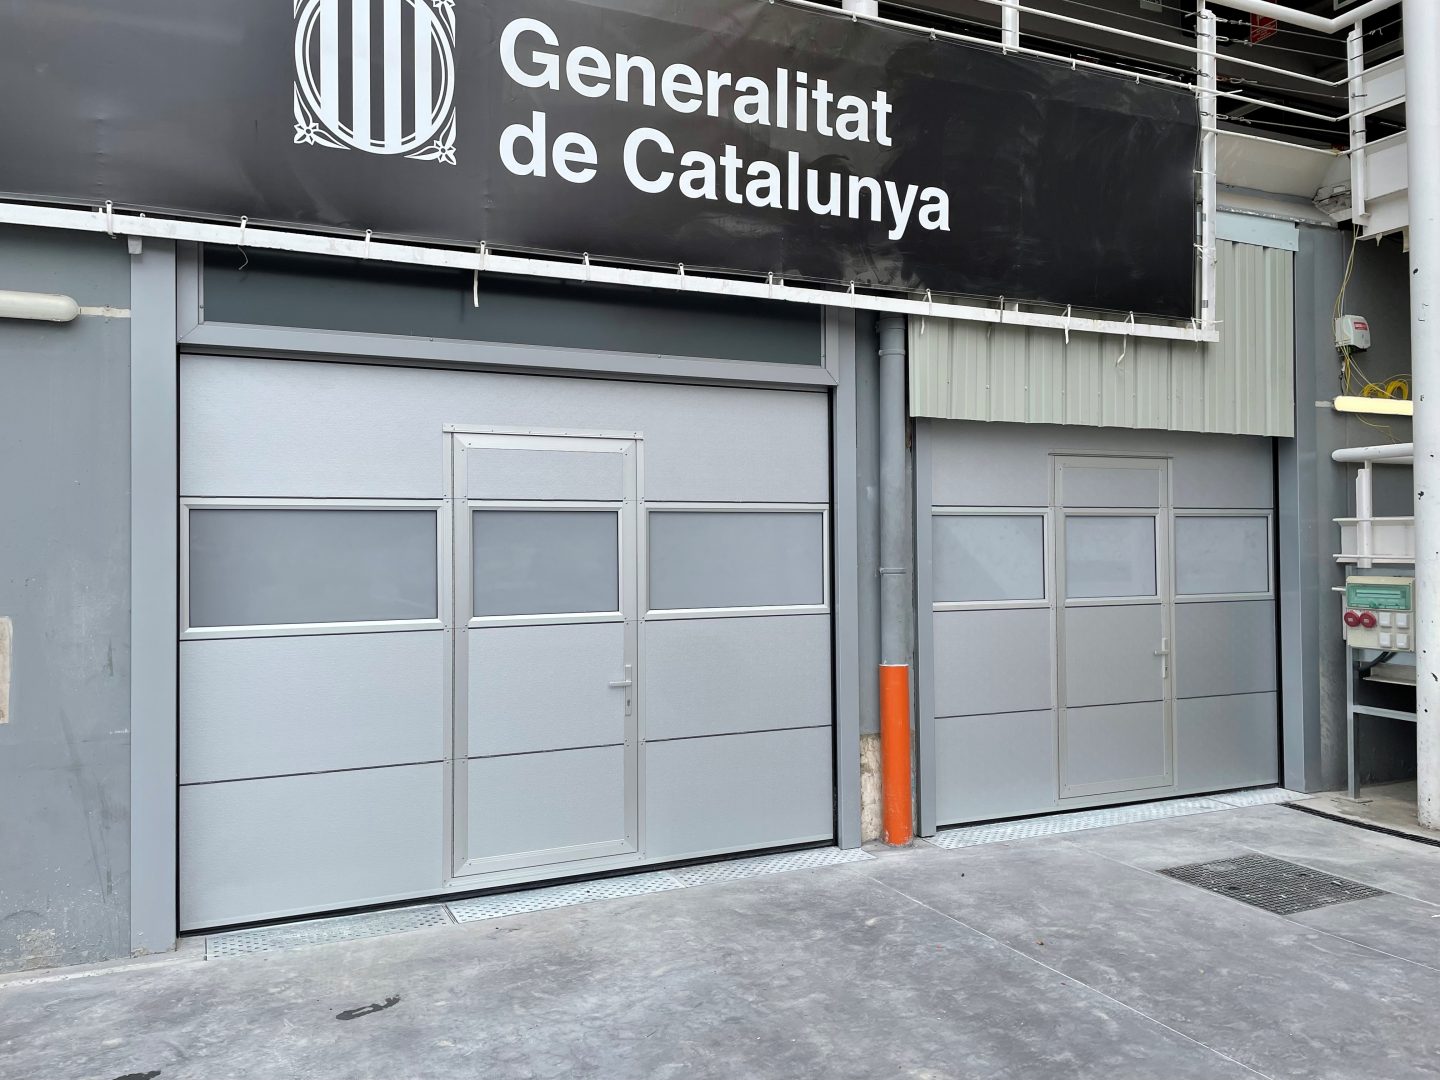 49 portes industrielles Rolflex pour le Circuit Barcelona Catalunya - Rolflex